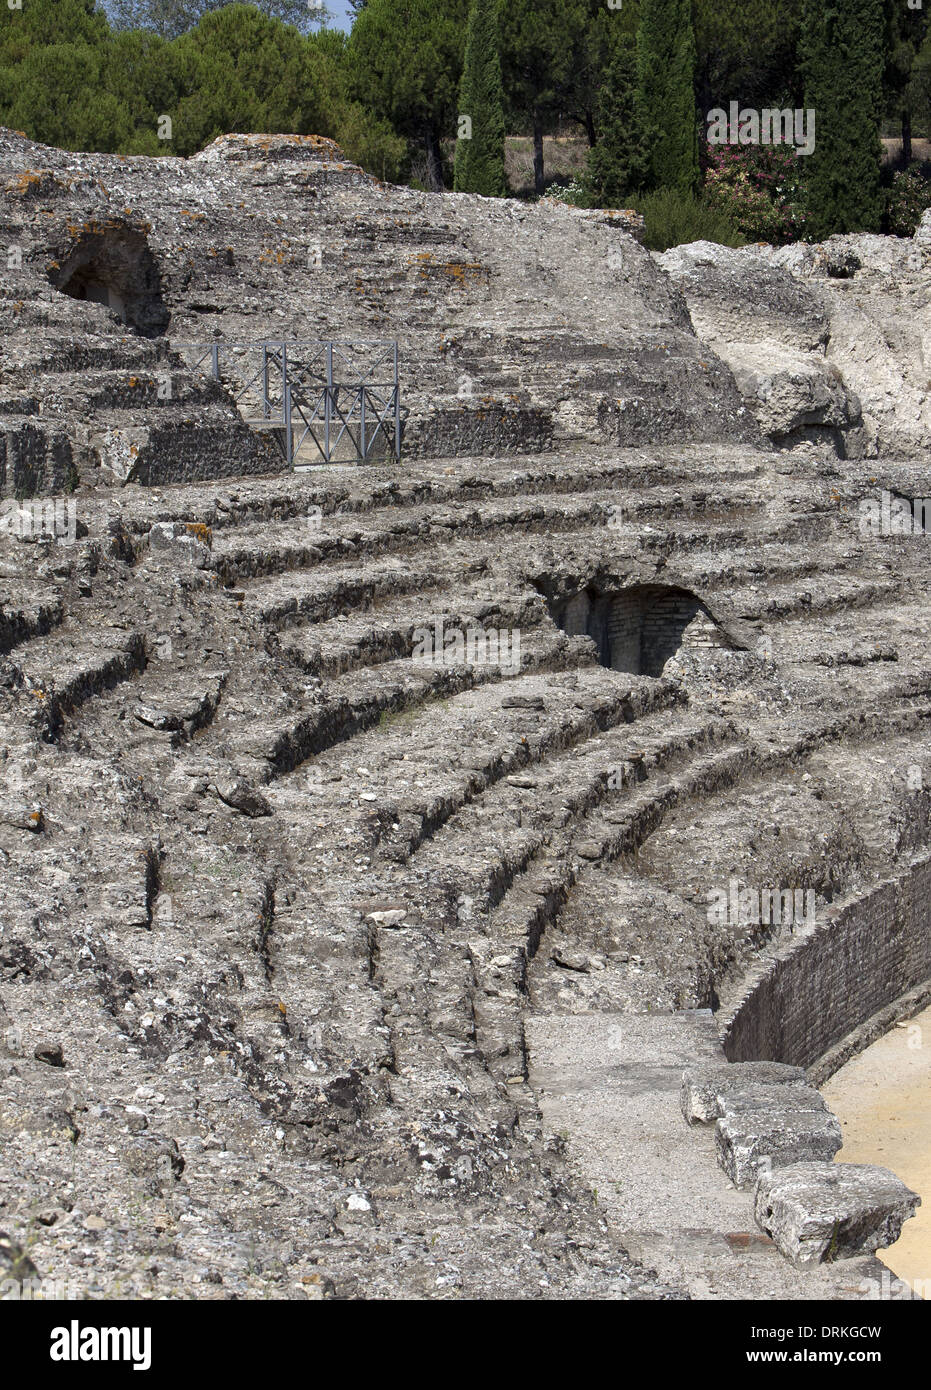 Spanien. Italica. Römische Stadt gegründet ca. 206 v. Chr.. Amphitheater. 117-138 V. CHR.. Steht. Andalusien. Stockfoto